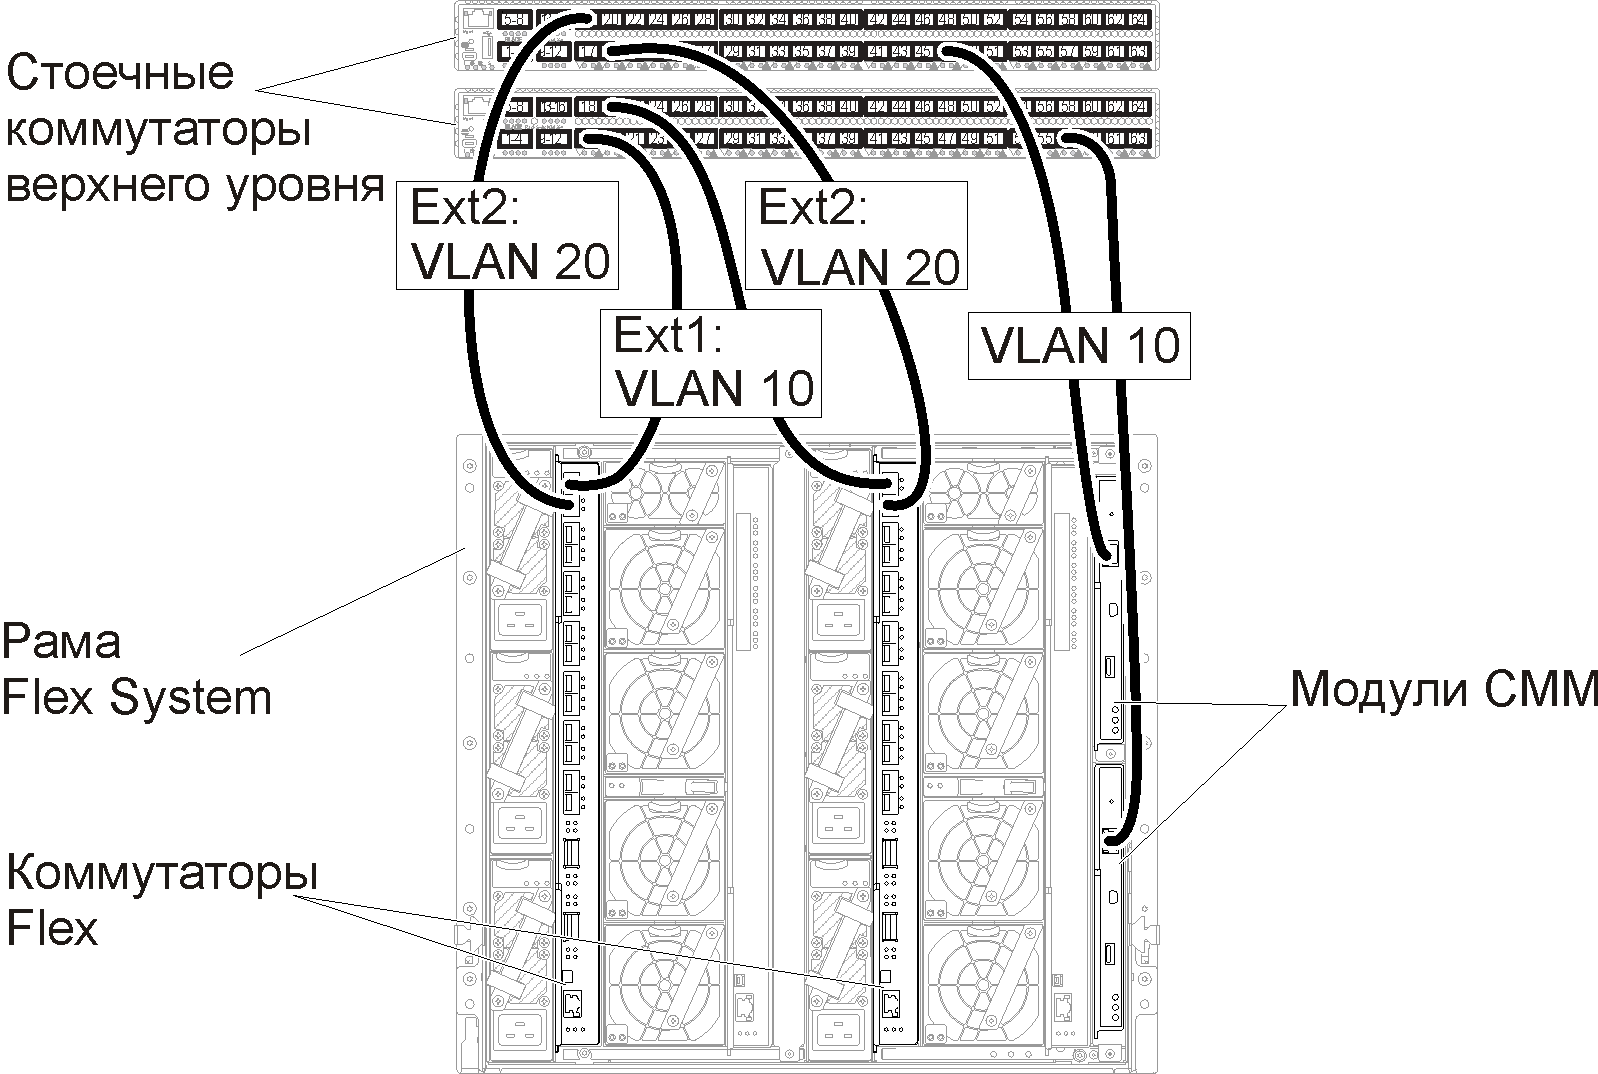 Настройка тегов VLAN как для сети управления, так и для сети данных.